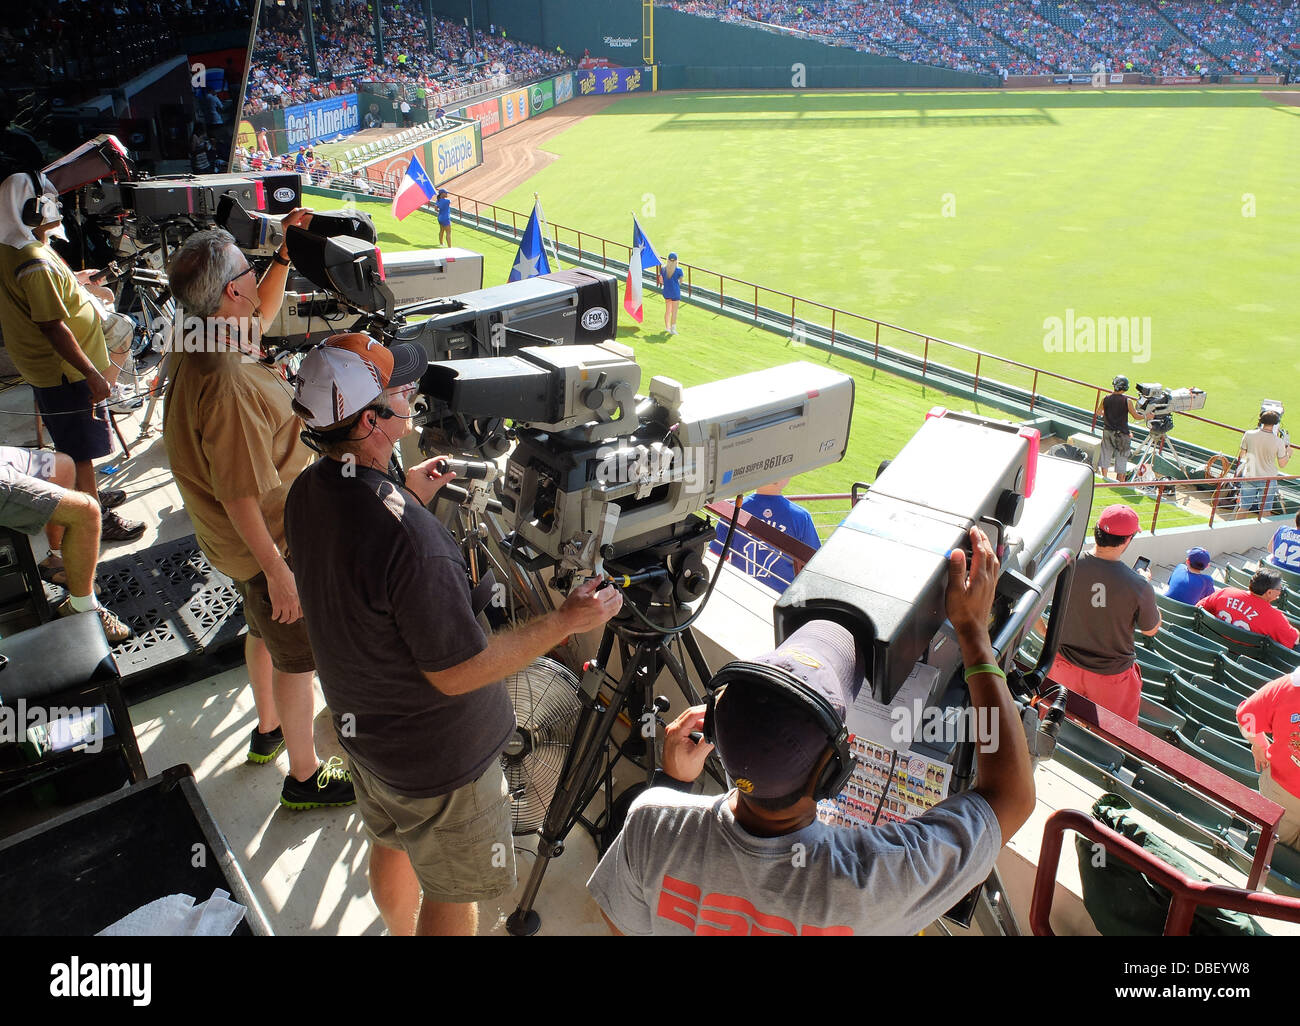 TV camera, JULY 25, 2013 - MLB : Television camera operators work during  the Major League Baseball game